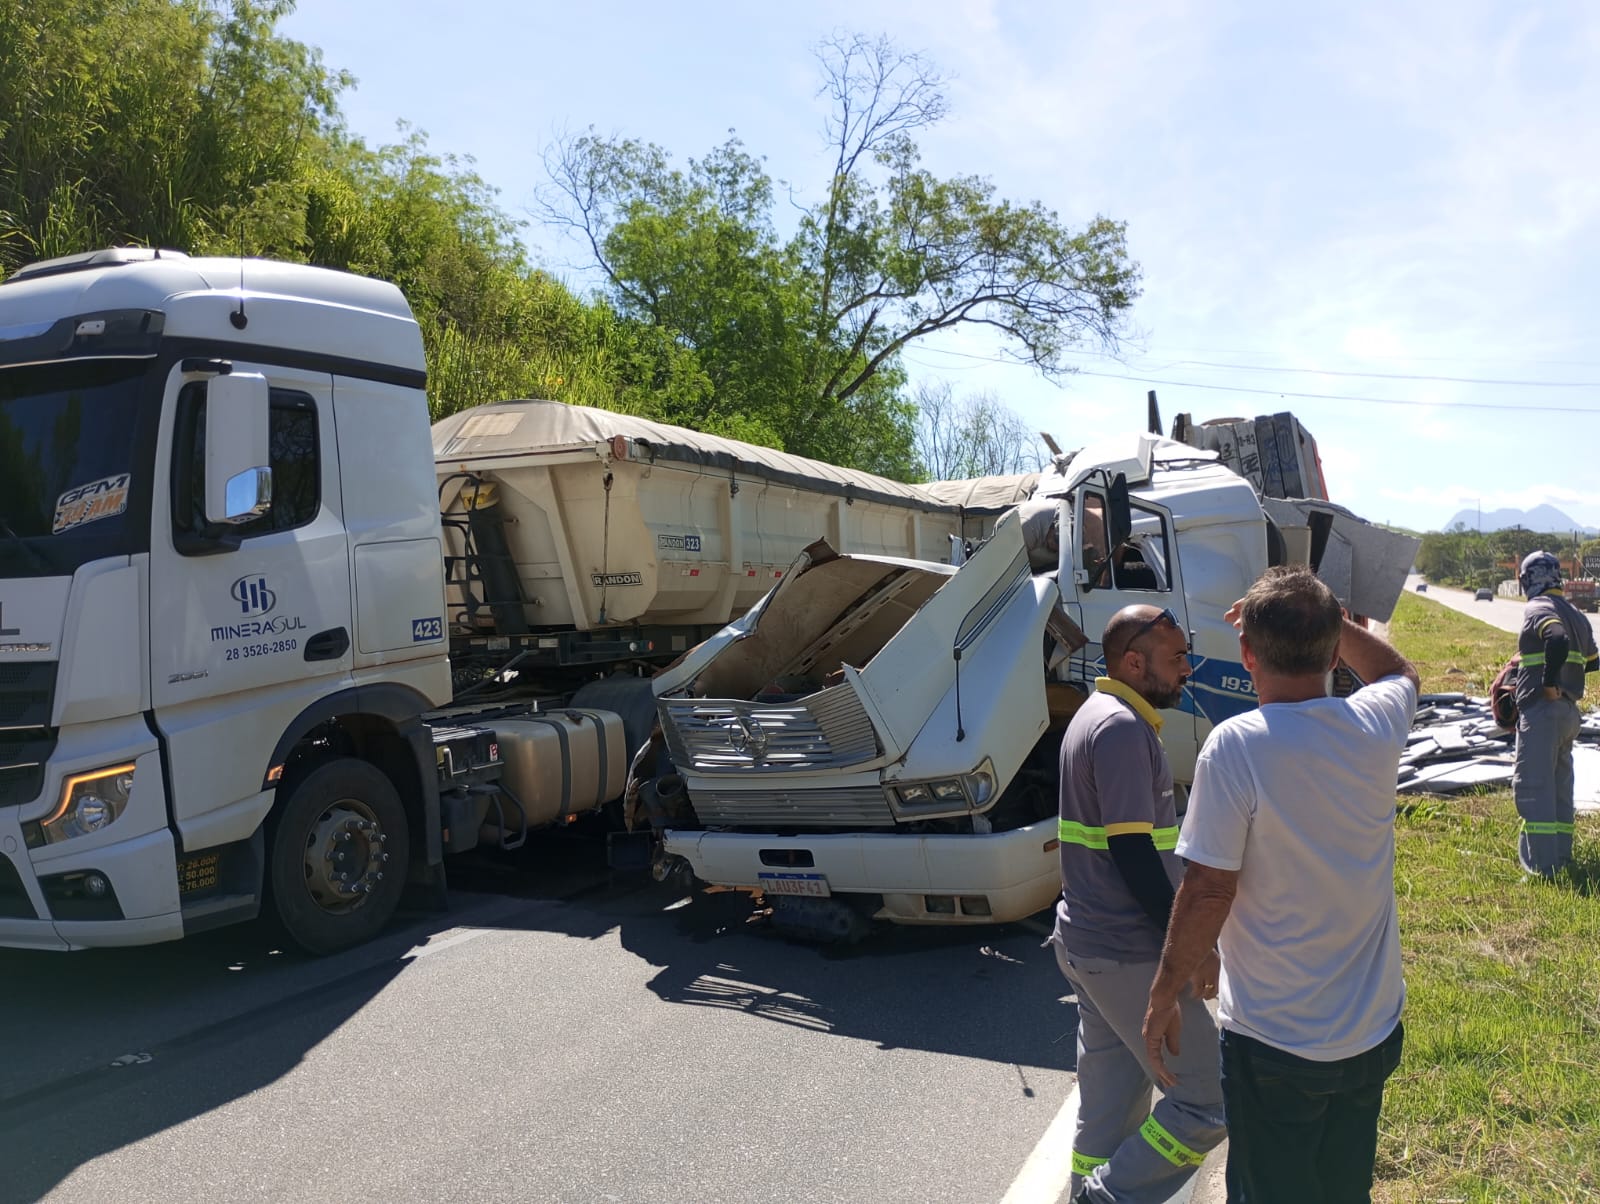 Batida foi registrada na localidade de Coutinho e o condutor de um dos veículos se feriu; colisão foi registrada na tarde desta segunda (26)